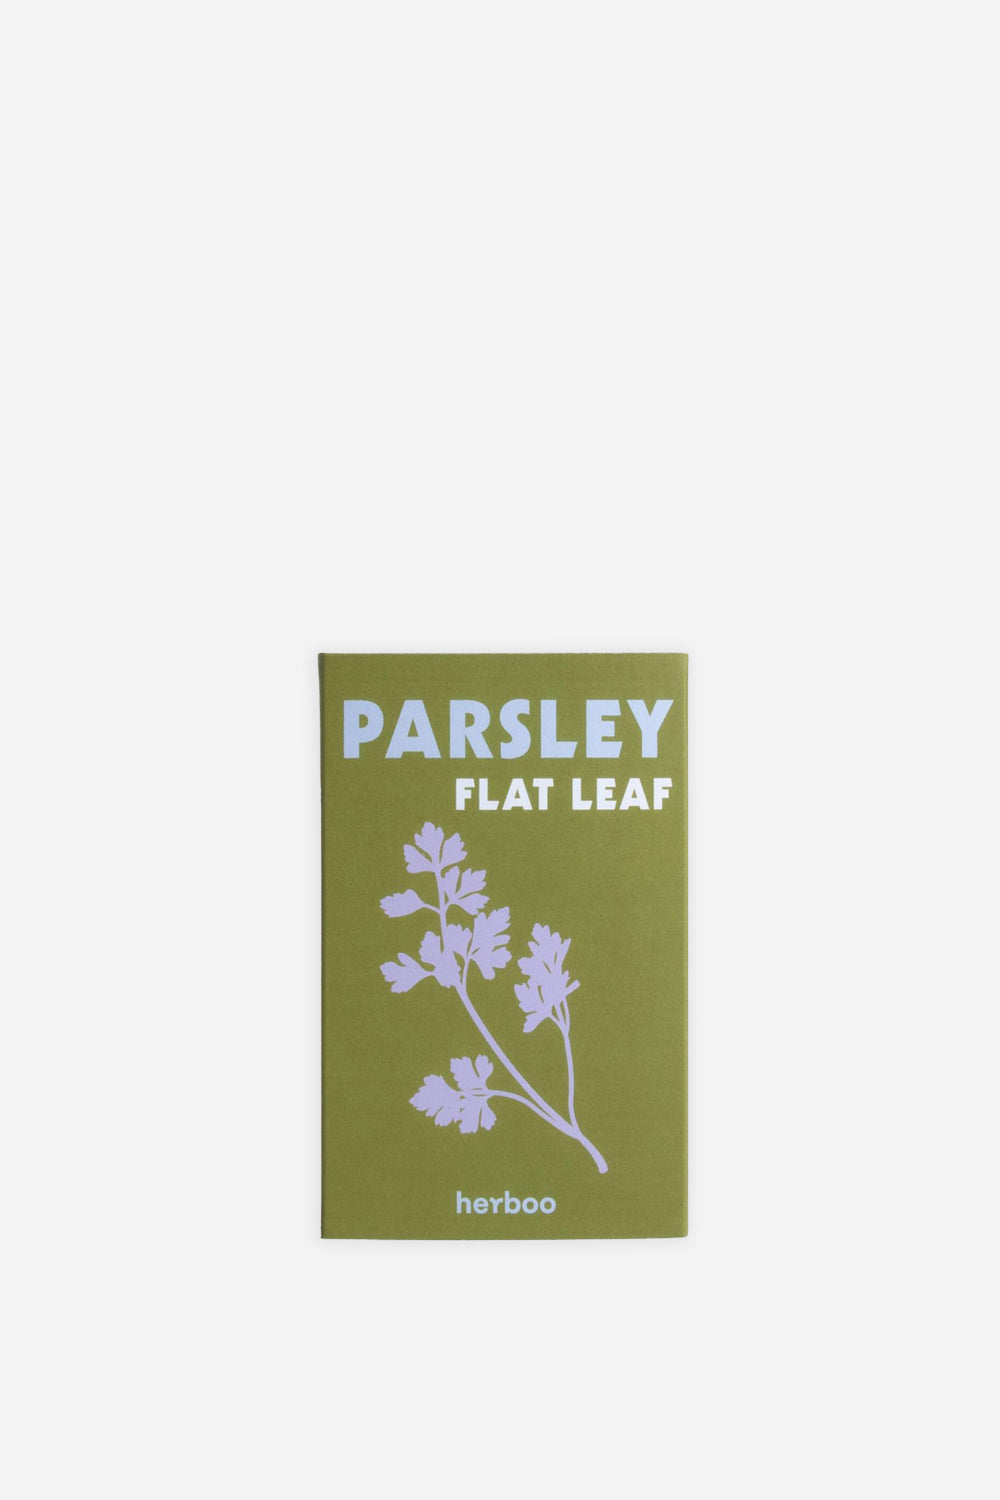 Seeds / Parsley